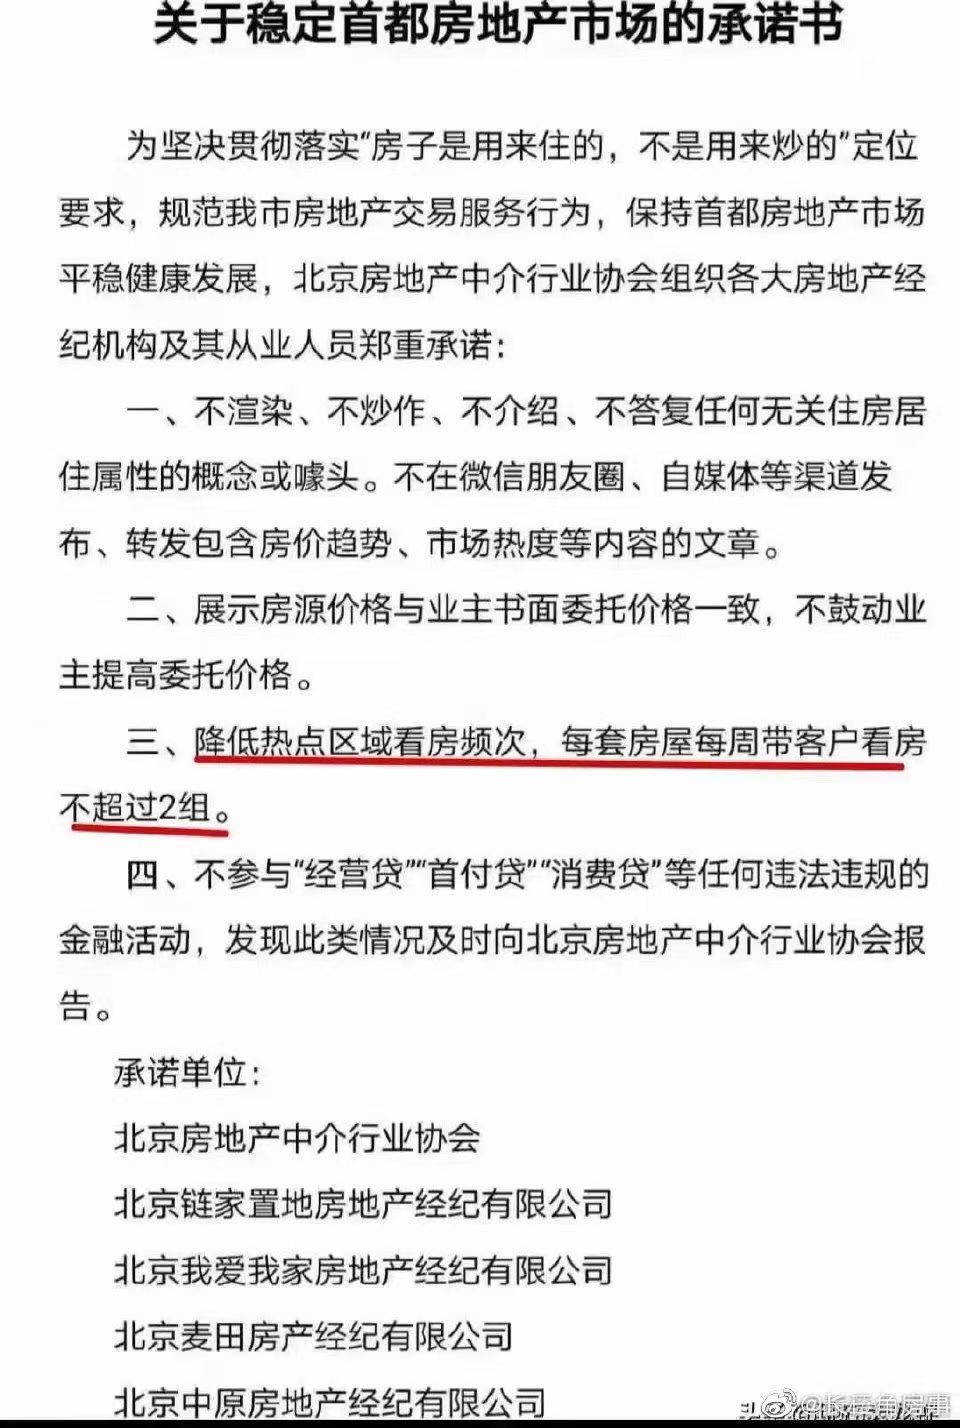 北京经纪机构签署承诺书 降低北京热点区域看房频次